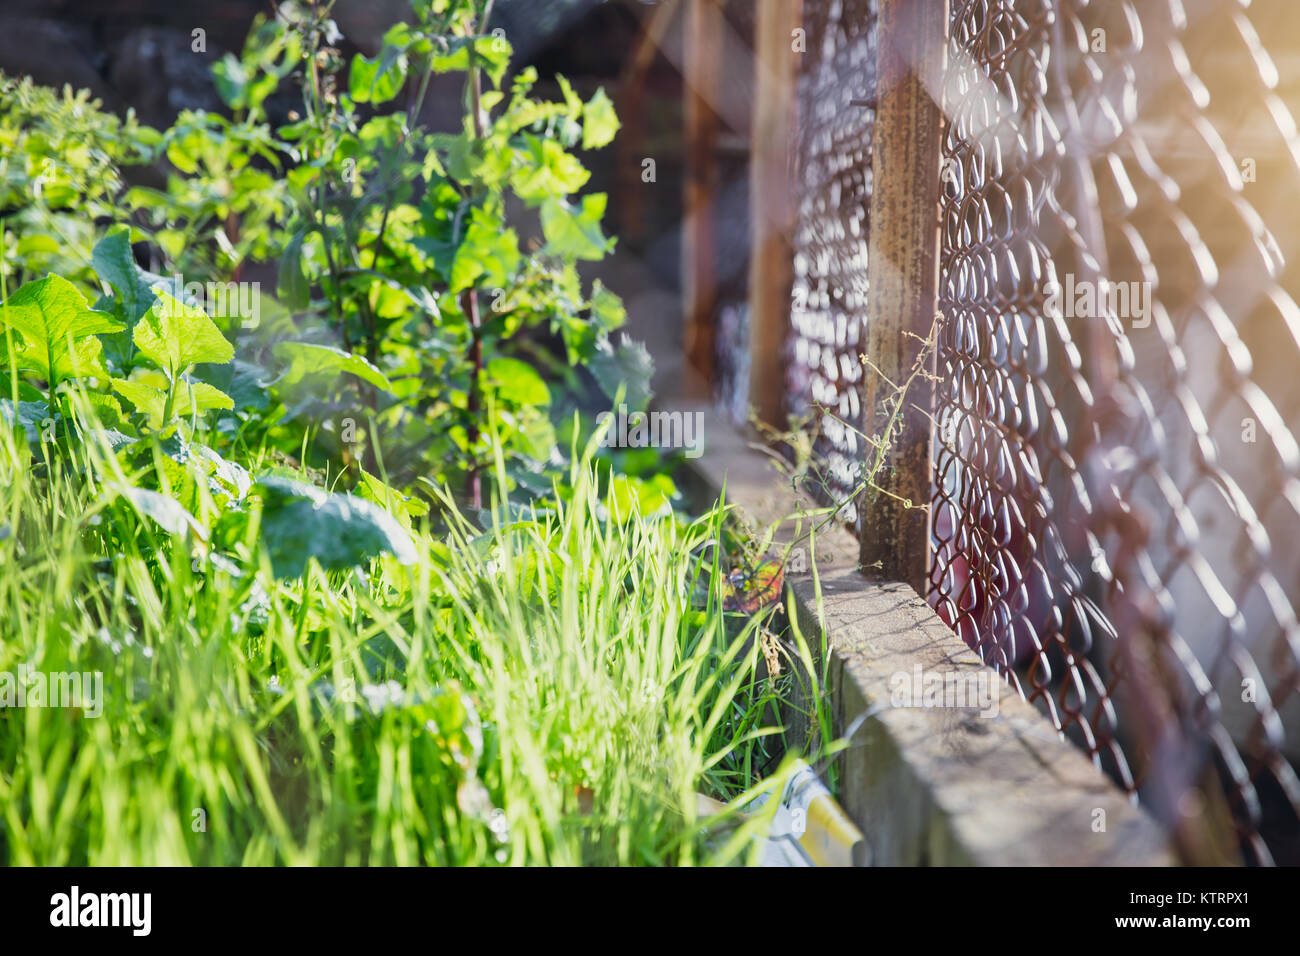 Grüne Gras Natur Outdoor mit draht stahl Zaun mit morgen Licht schützen Umwelt Konzept Stockfoto